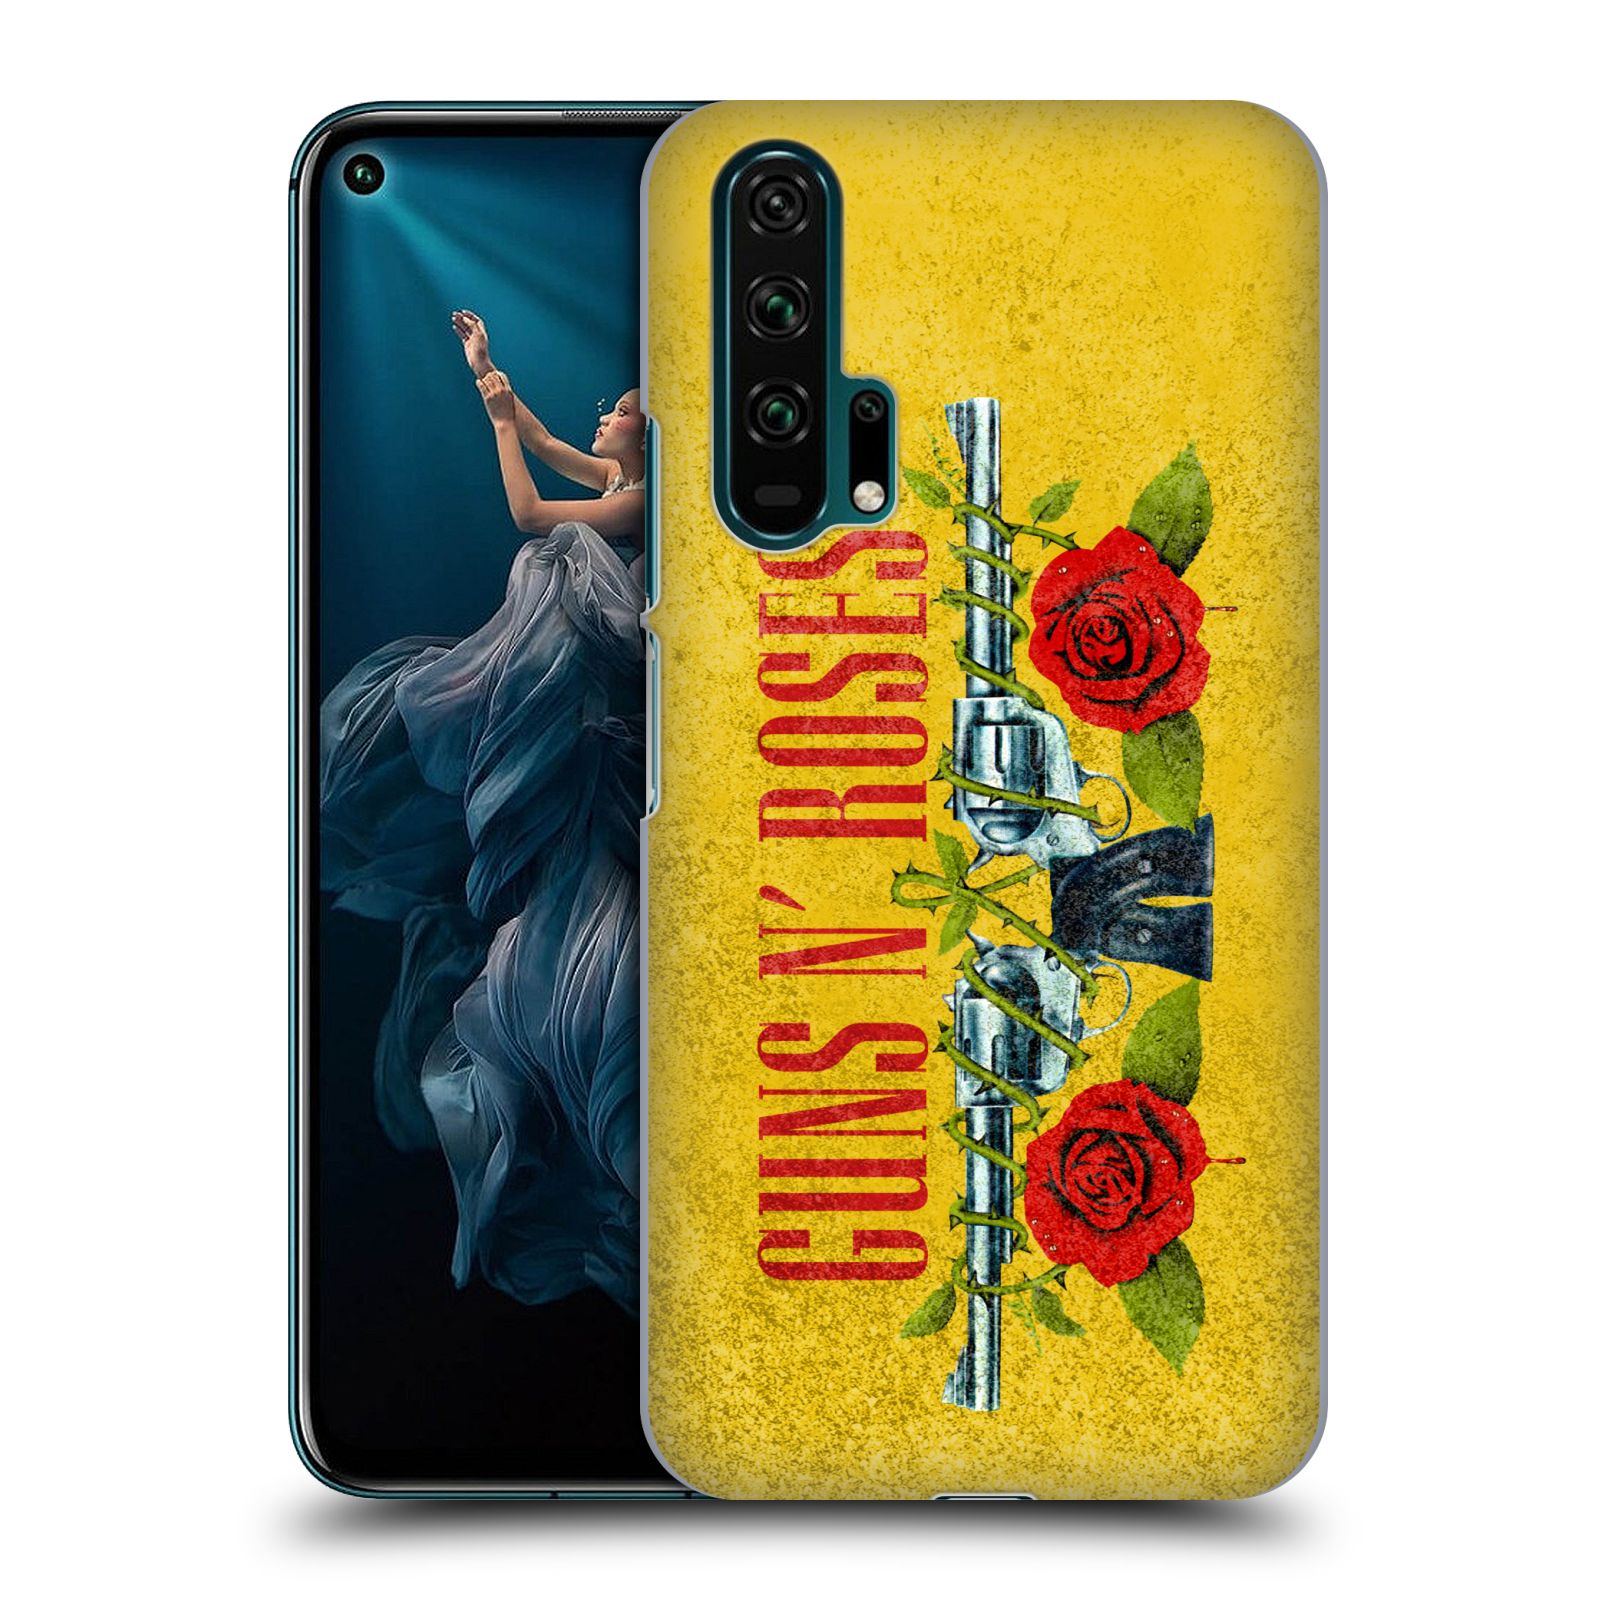 Pouzdro na mobil Honor 20 PRO - HEAD CASE - hudební skupina Guns N Roses pistole a růže žluté pozadí